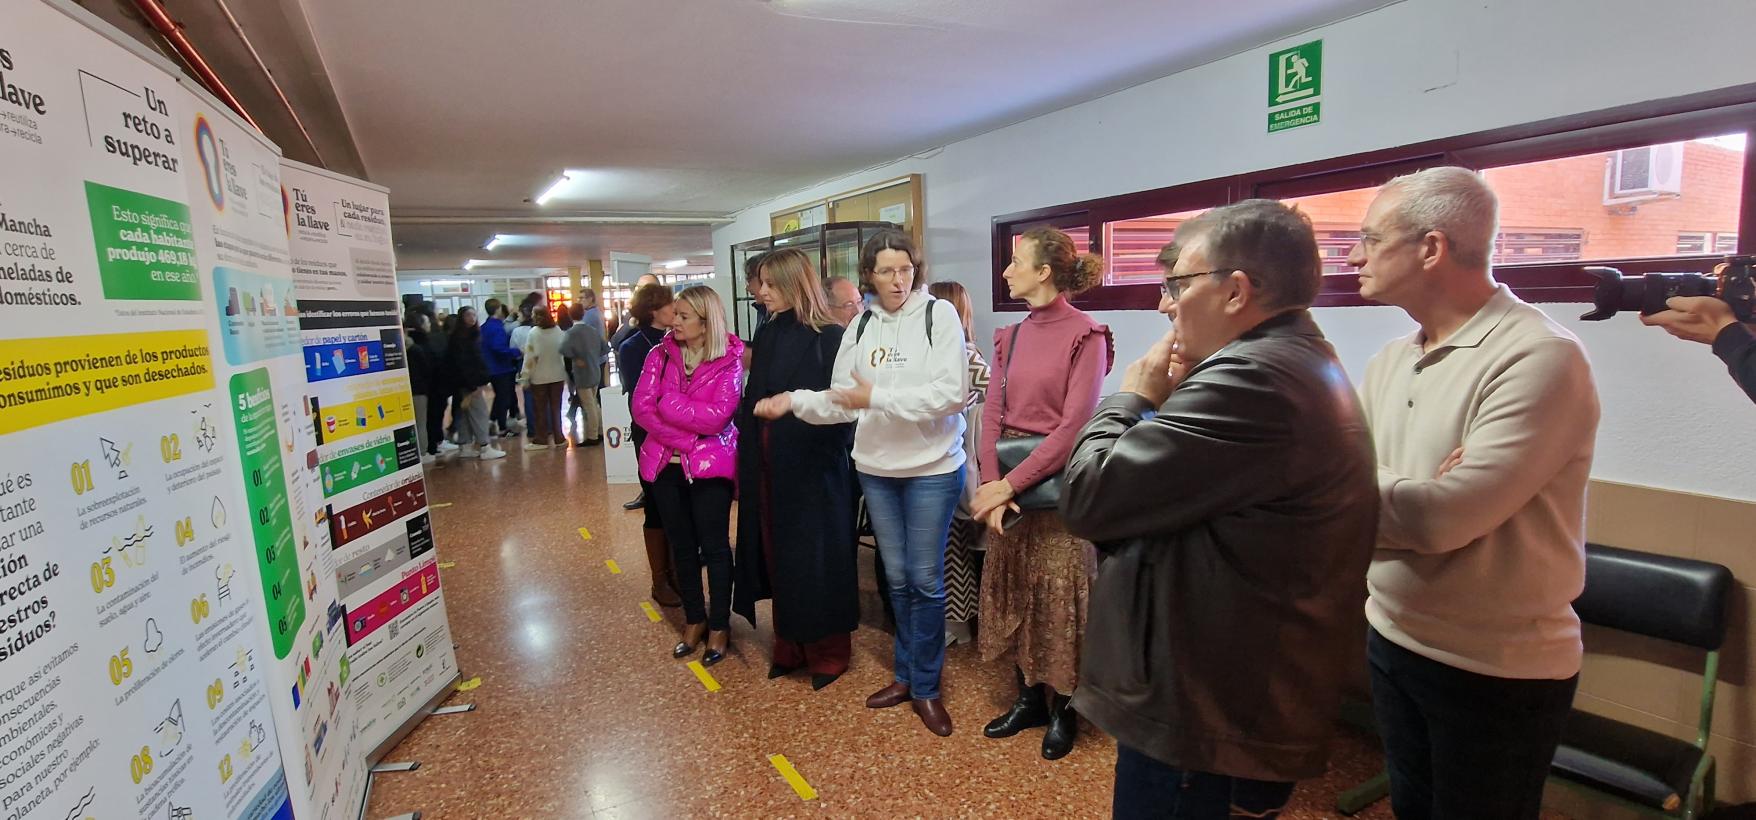 Image 2 of article El Ejecutivo regional lleva hasta 250 municipios de Castilla-La Mancha el programa de sensibilización 'Tú Eres La Llave' para una correcta gestión de los residuos